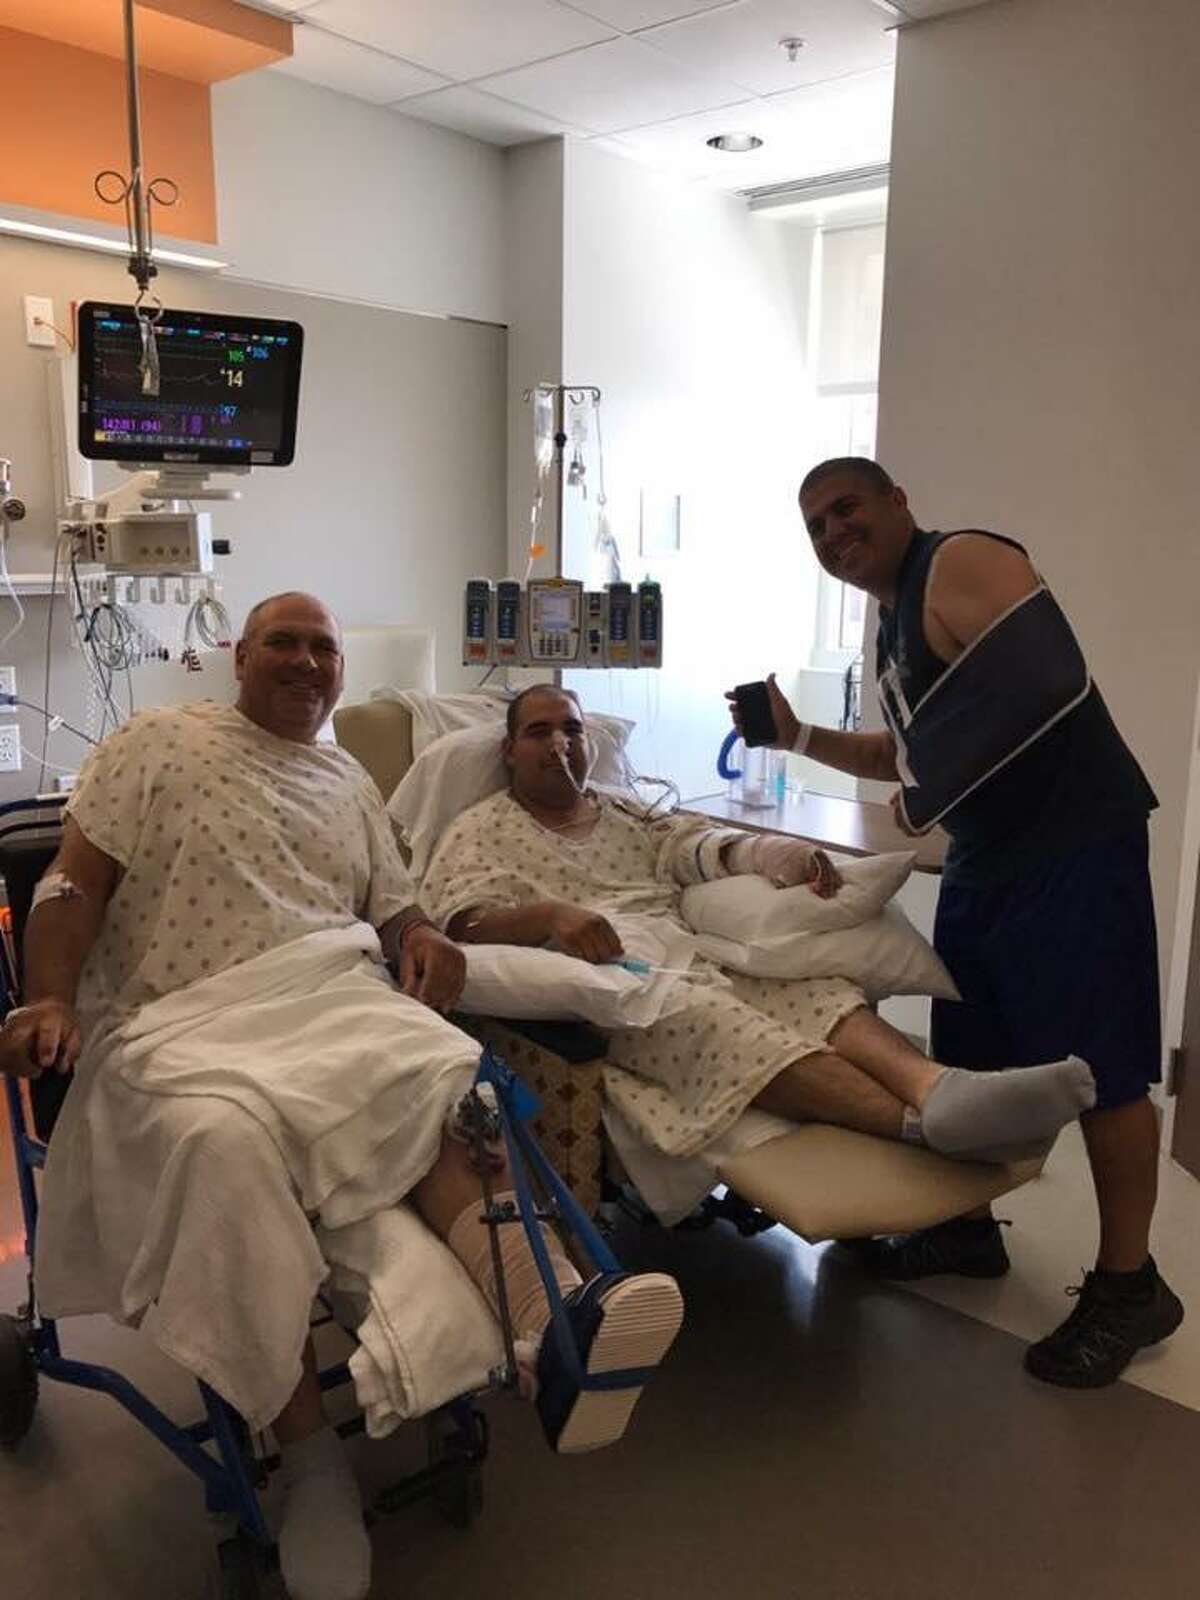 Los oficiales Agapito Pérez, Arturo Vela y Mario Casares en el hospital son vistos recuperándose.